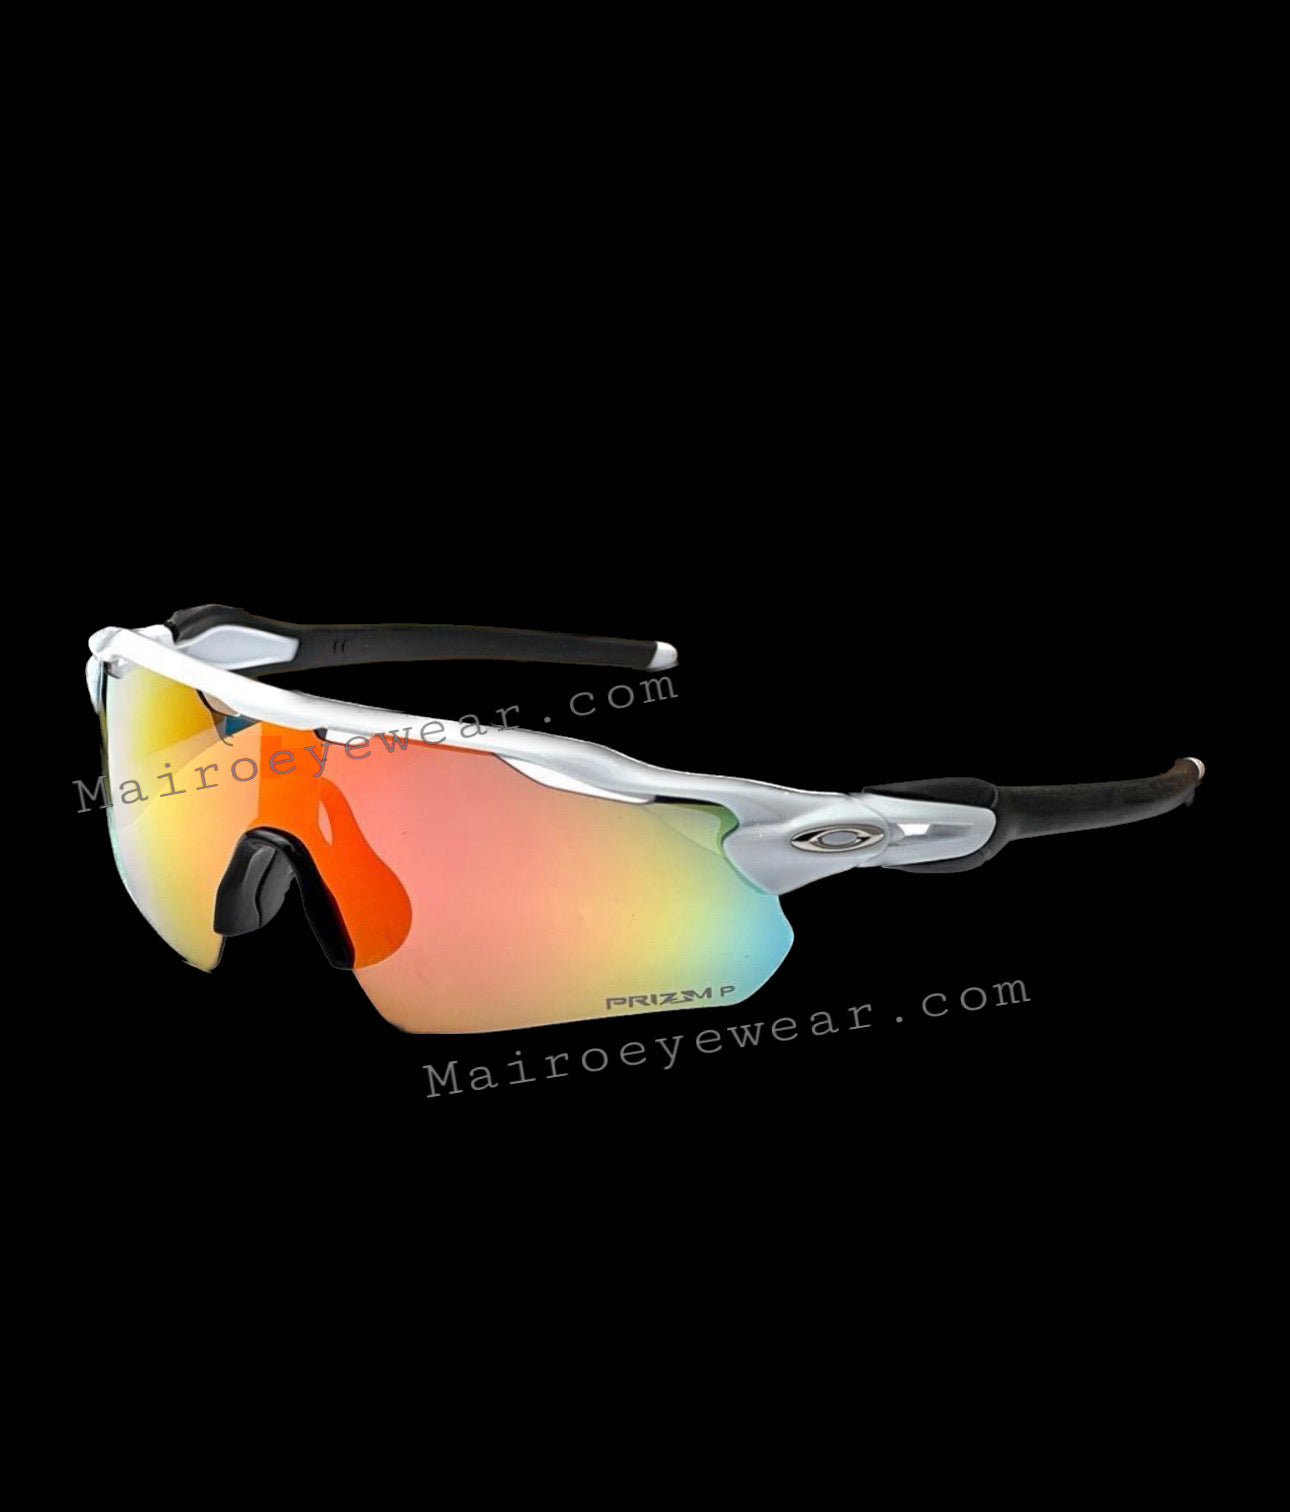 EPHIU Square Sports Polarized Sunglasses for Women and Men Mirror